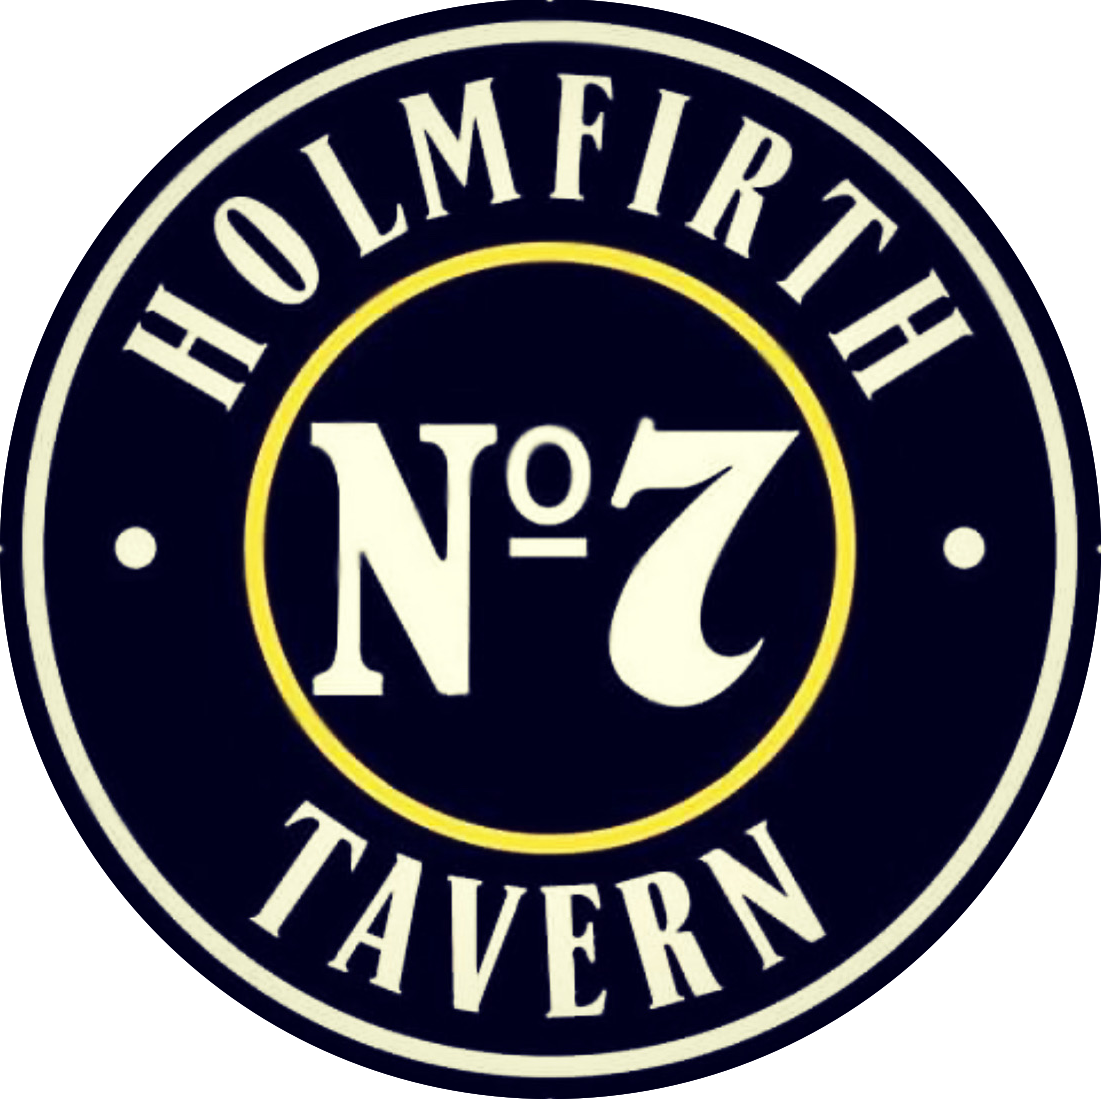 Holmfirth Tavern